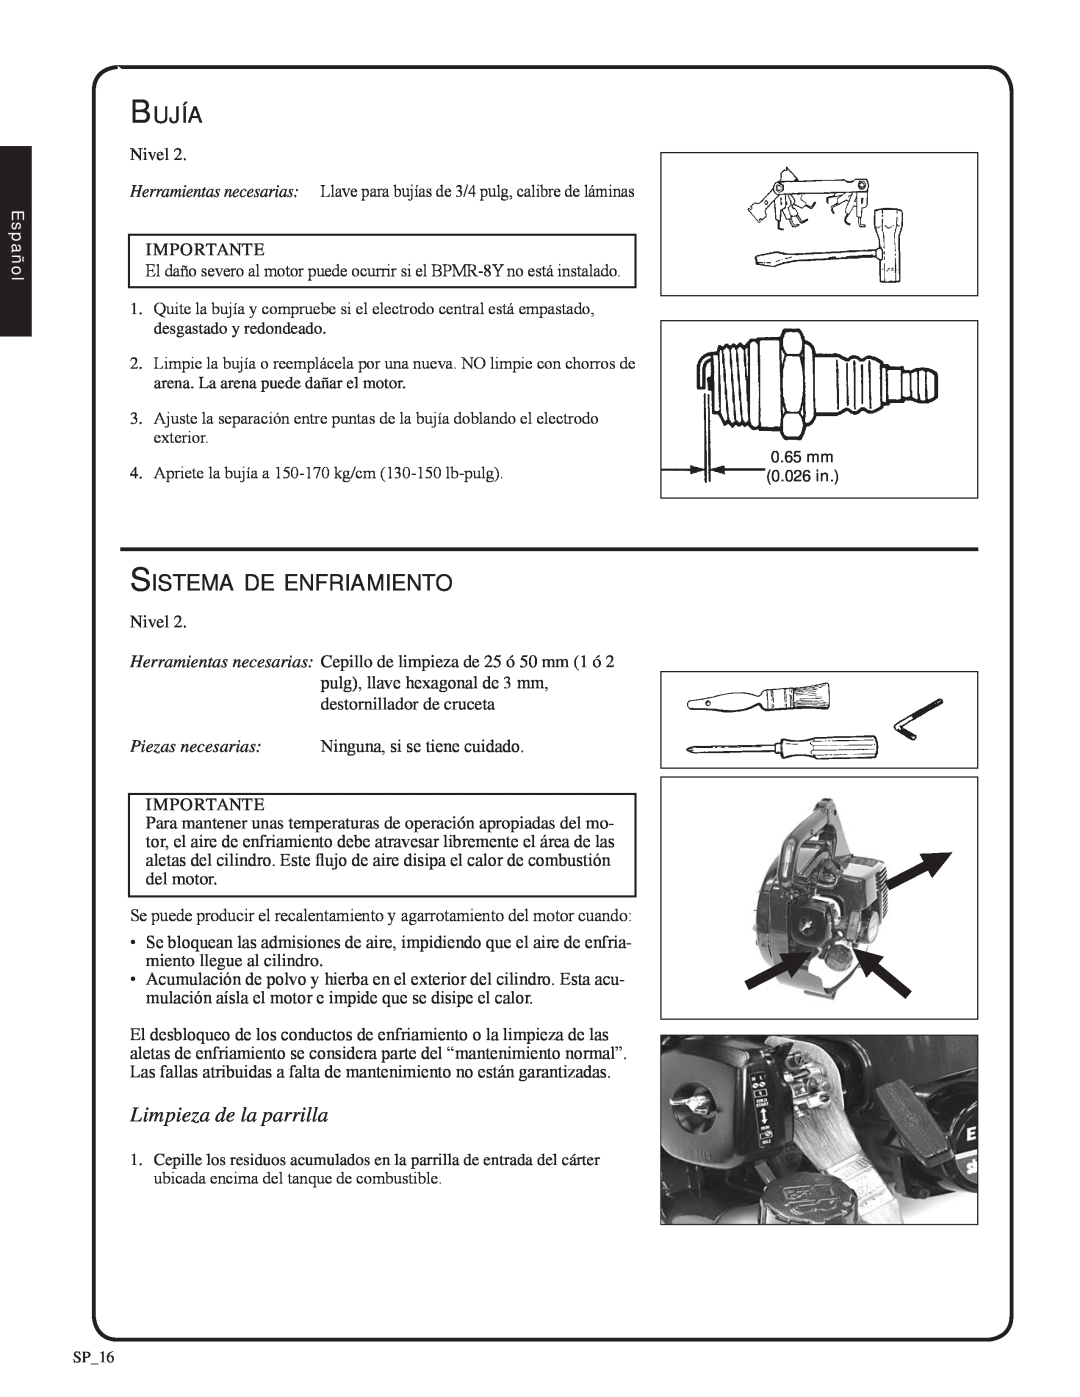 Shindaiwa EB212, 82051 manual Bujía, Sistema de enfriamiento, Limpieza de la parrilla, Español 